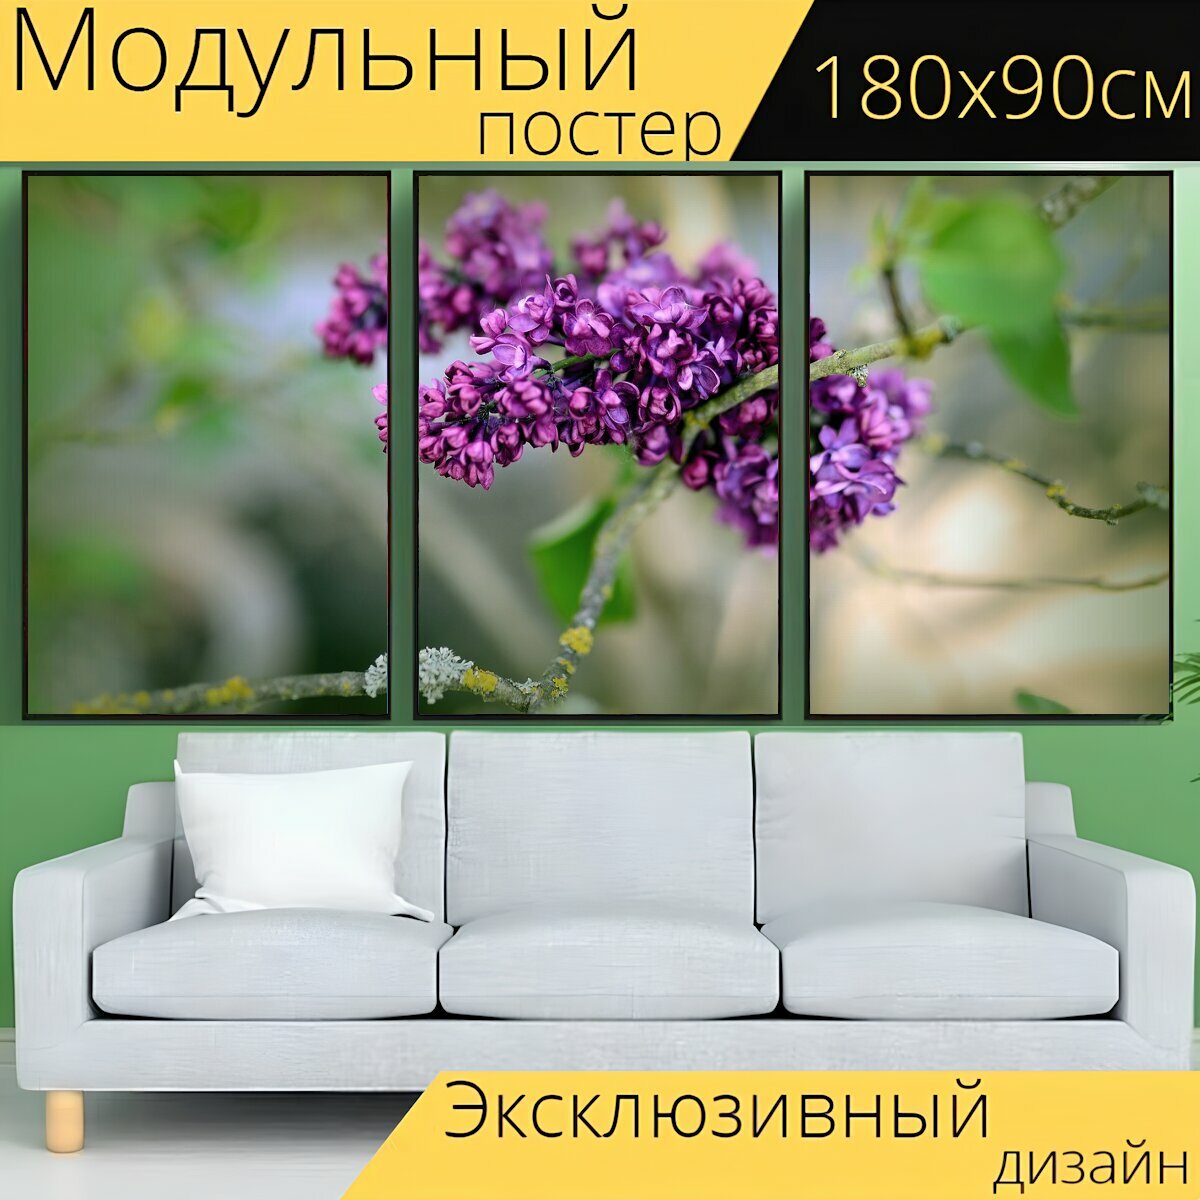 Модульный постер "Сирень, цветение сирени, весна" 180 x 90 см. для интерьера